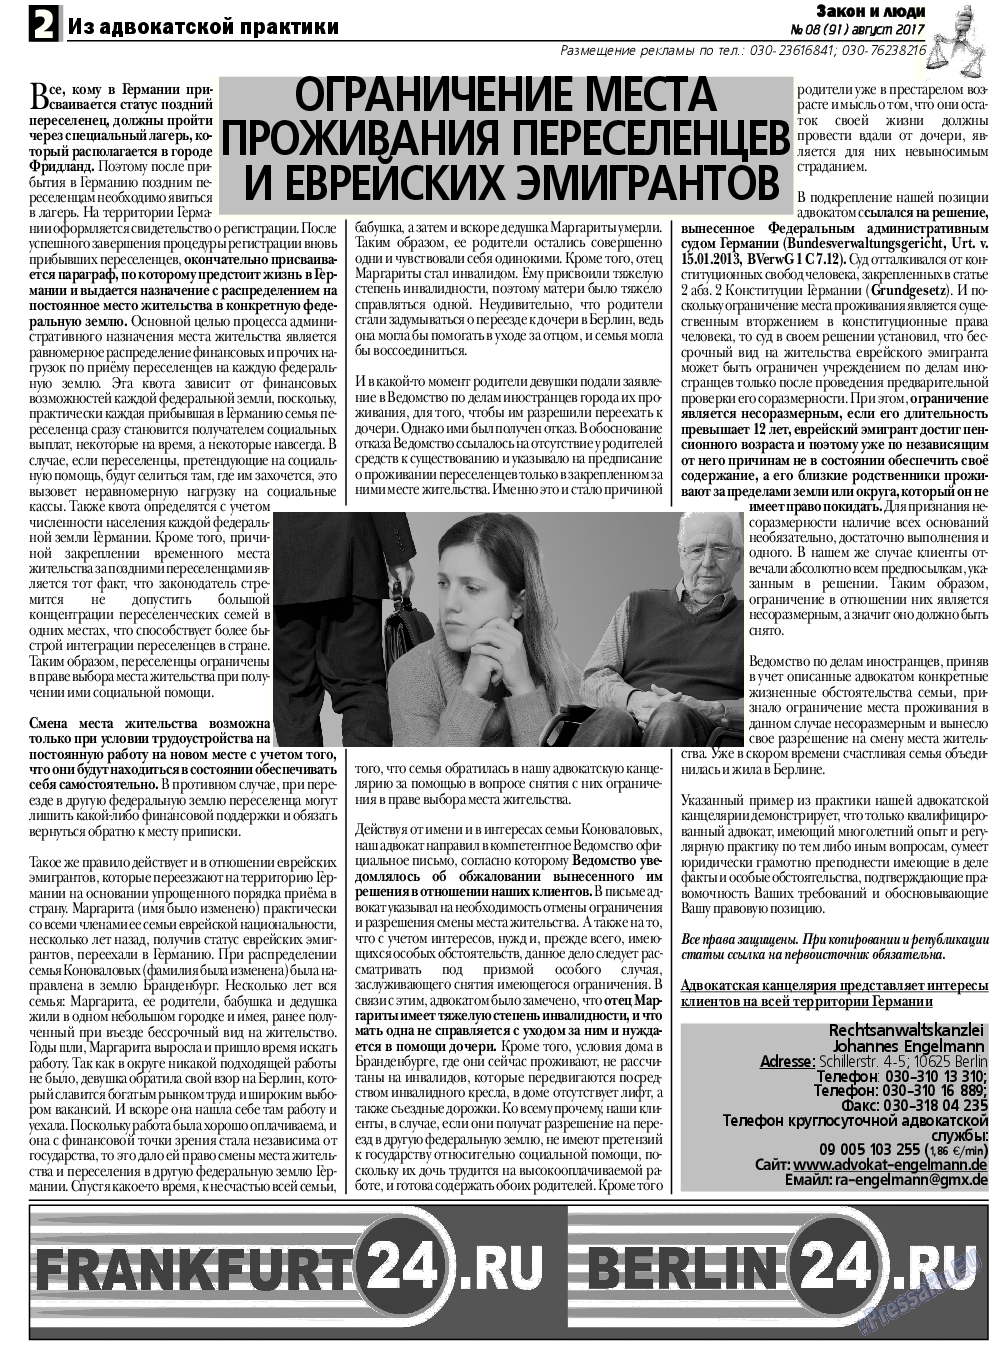 Закон и люди, газета. 2017 №8 стр.2